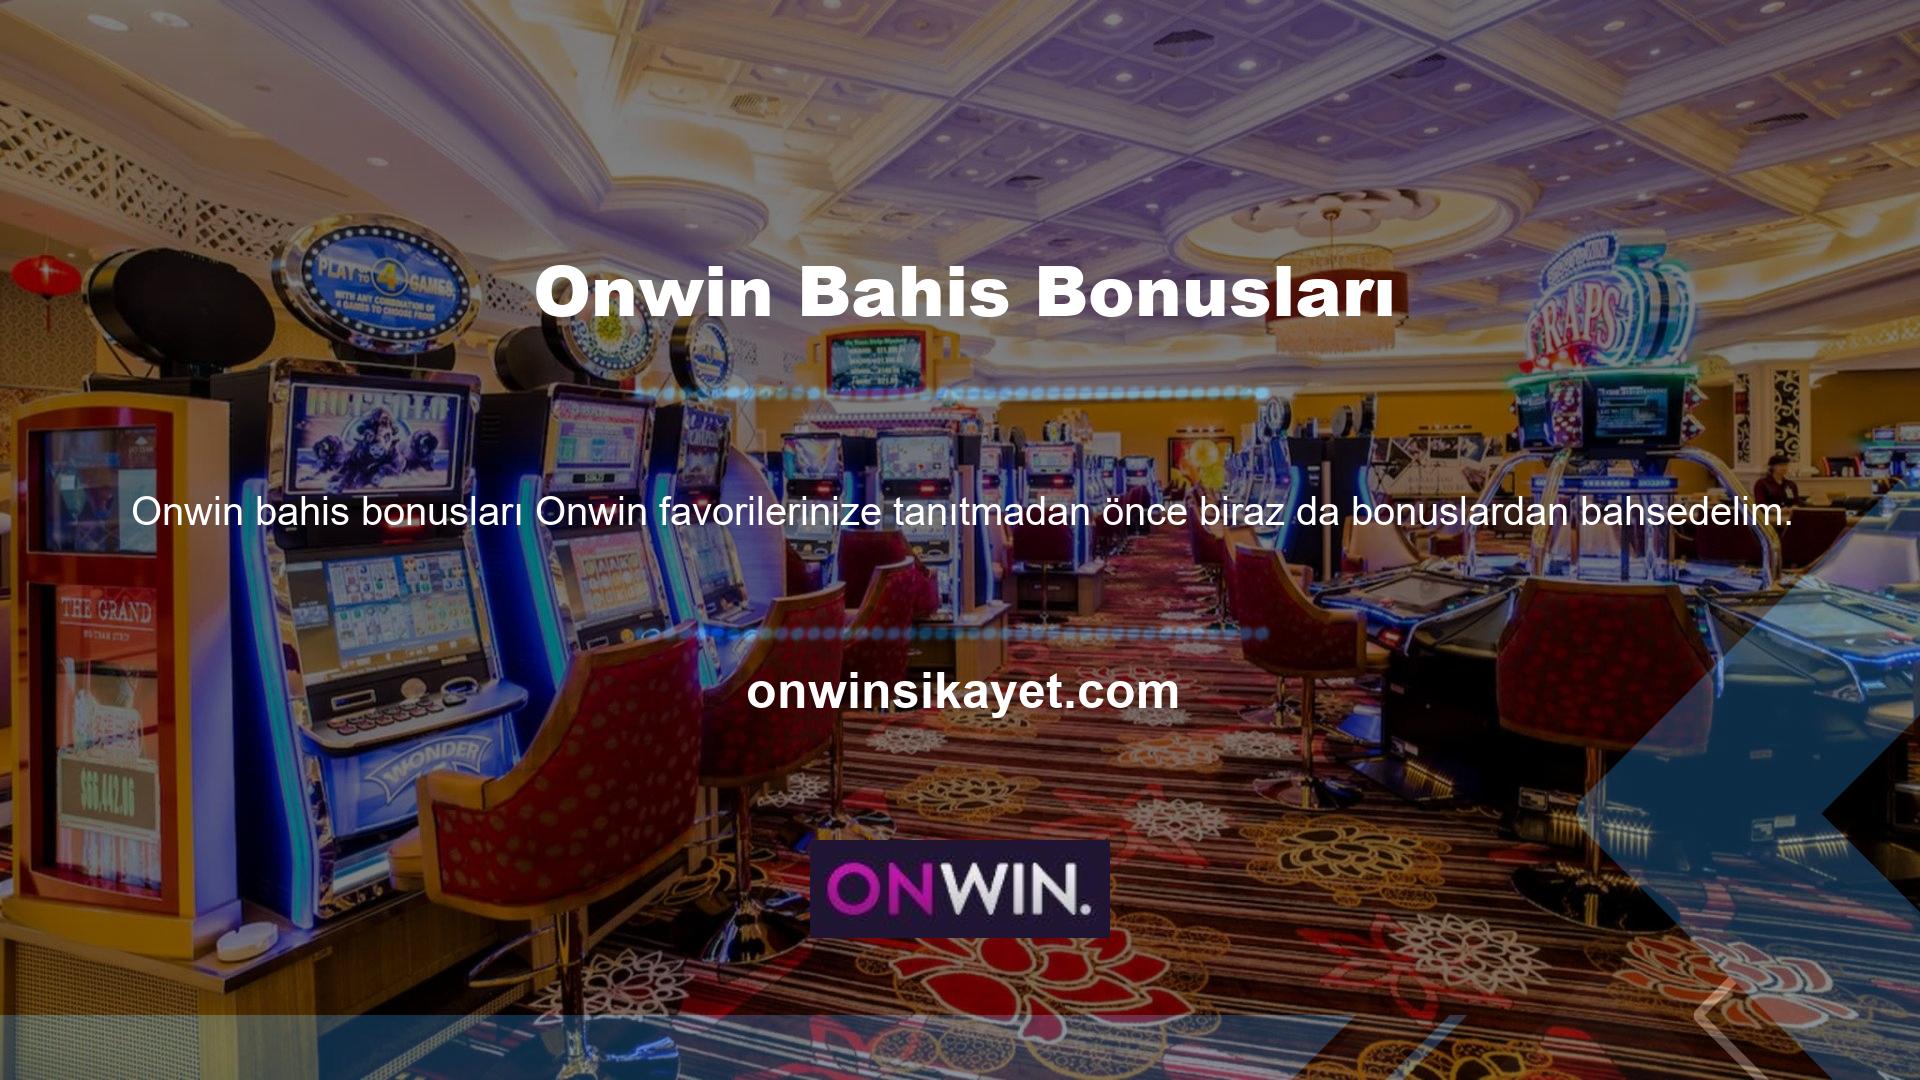 Onwin, üyelerinin kazanmasını isteyen tüm üyeleri adına sosyal medyadan takip ederek ve etkinliklere ev sahipliği yaparak oyun dünyasının önde gelen isimlerinden biri haline gelmiştir